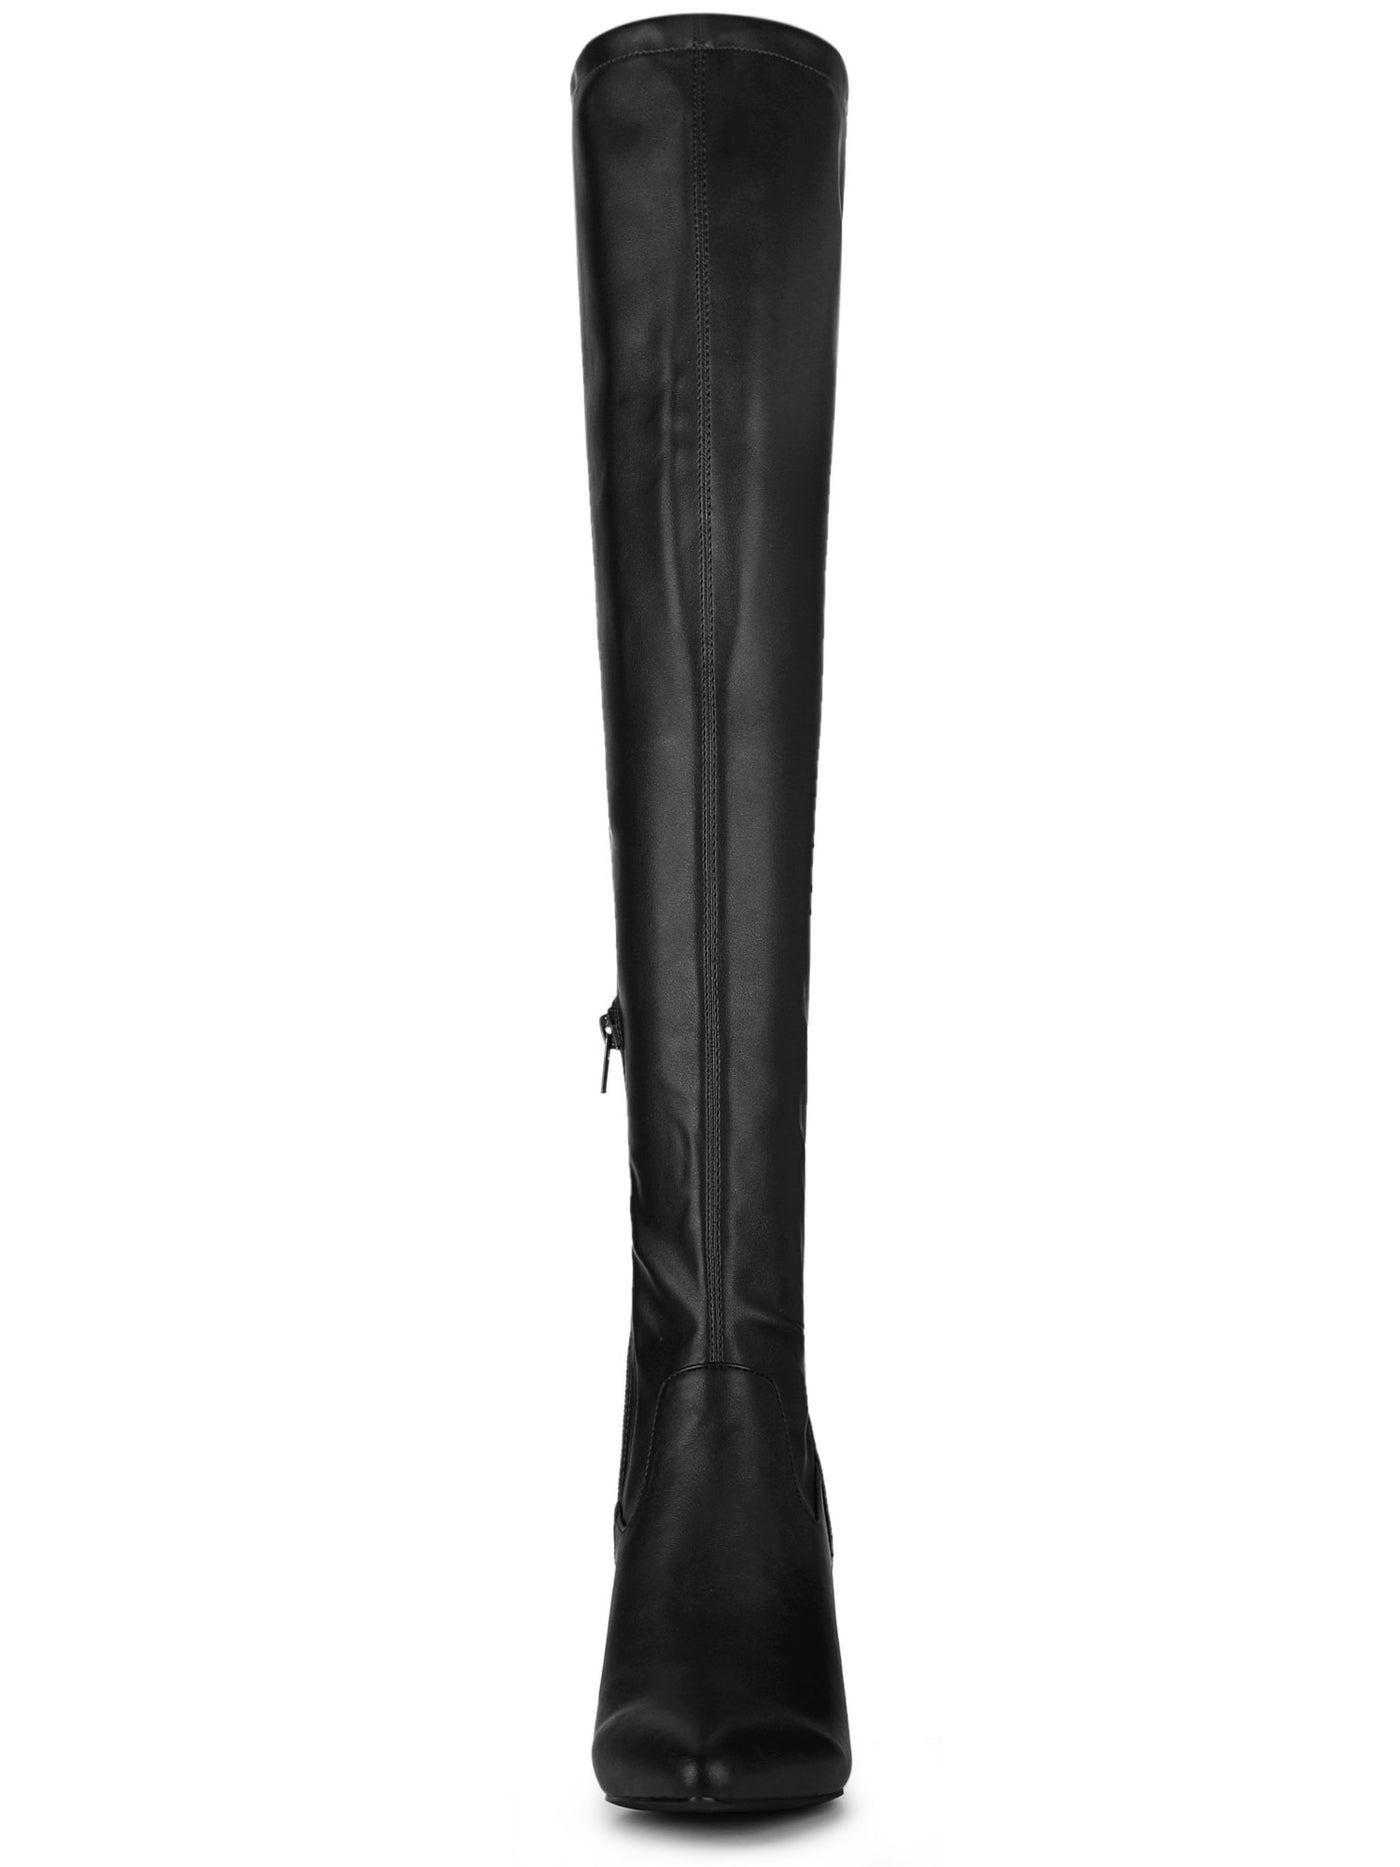 Allegra K Pointed Toe Block Heel Zipper Over Knee High Boots